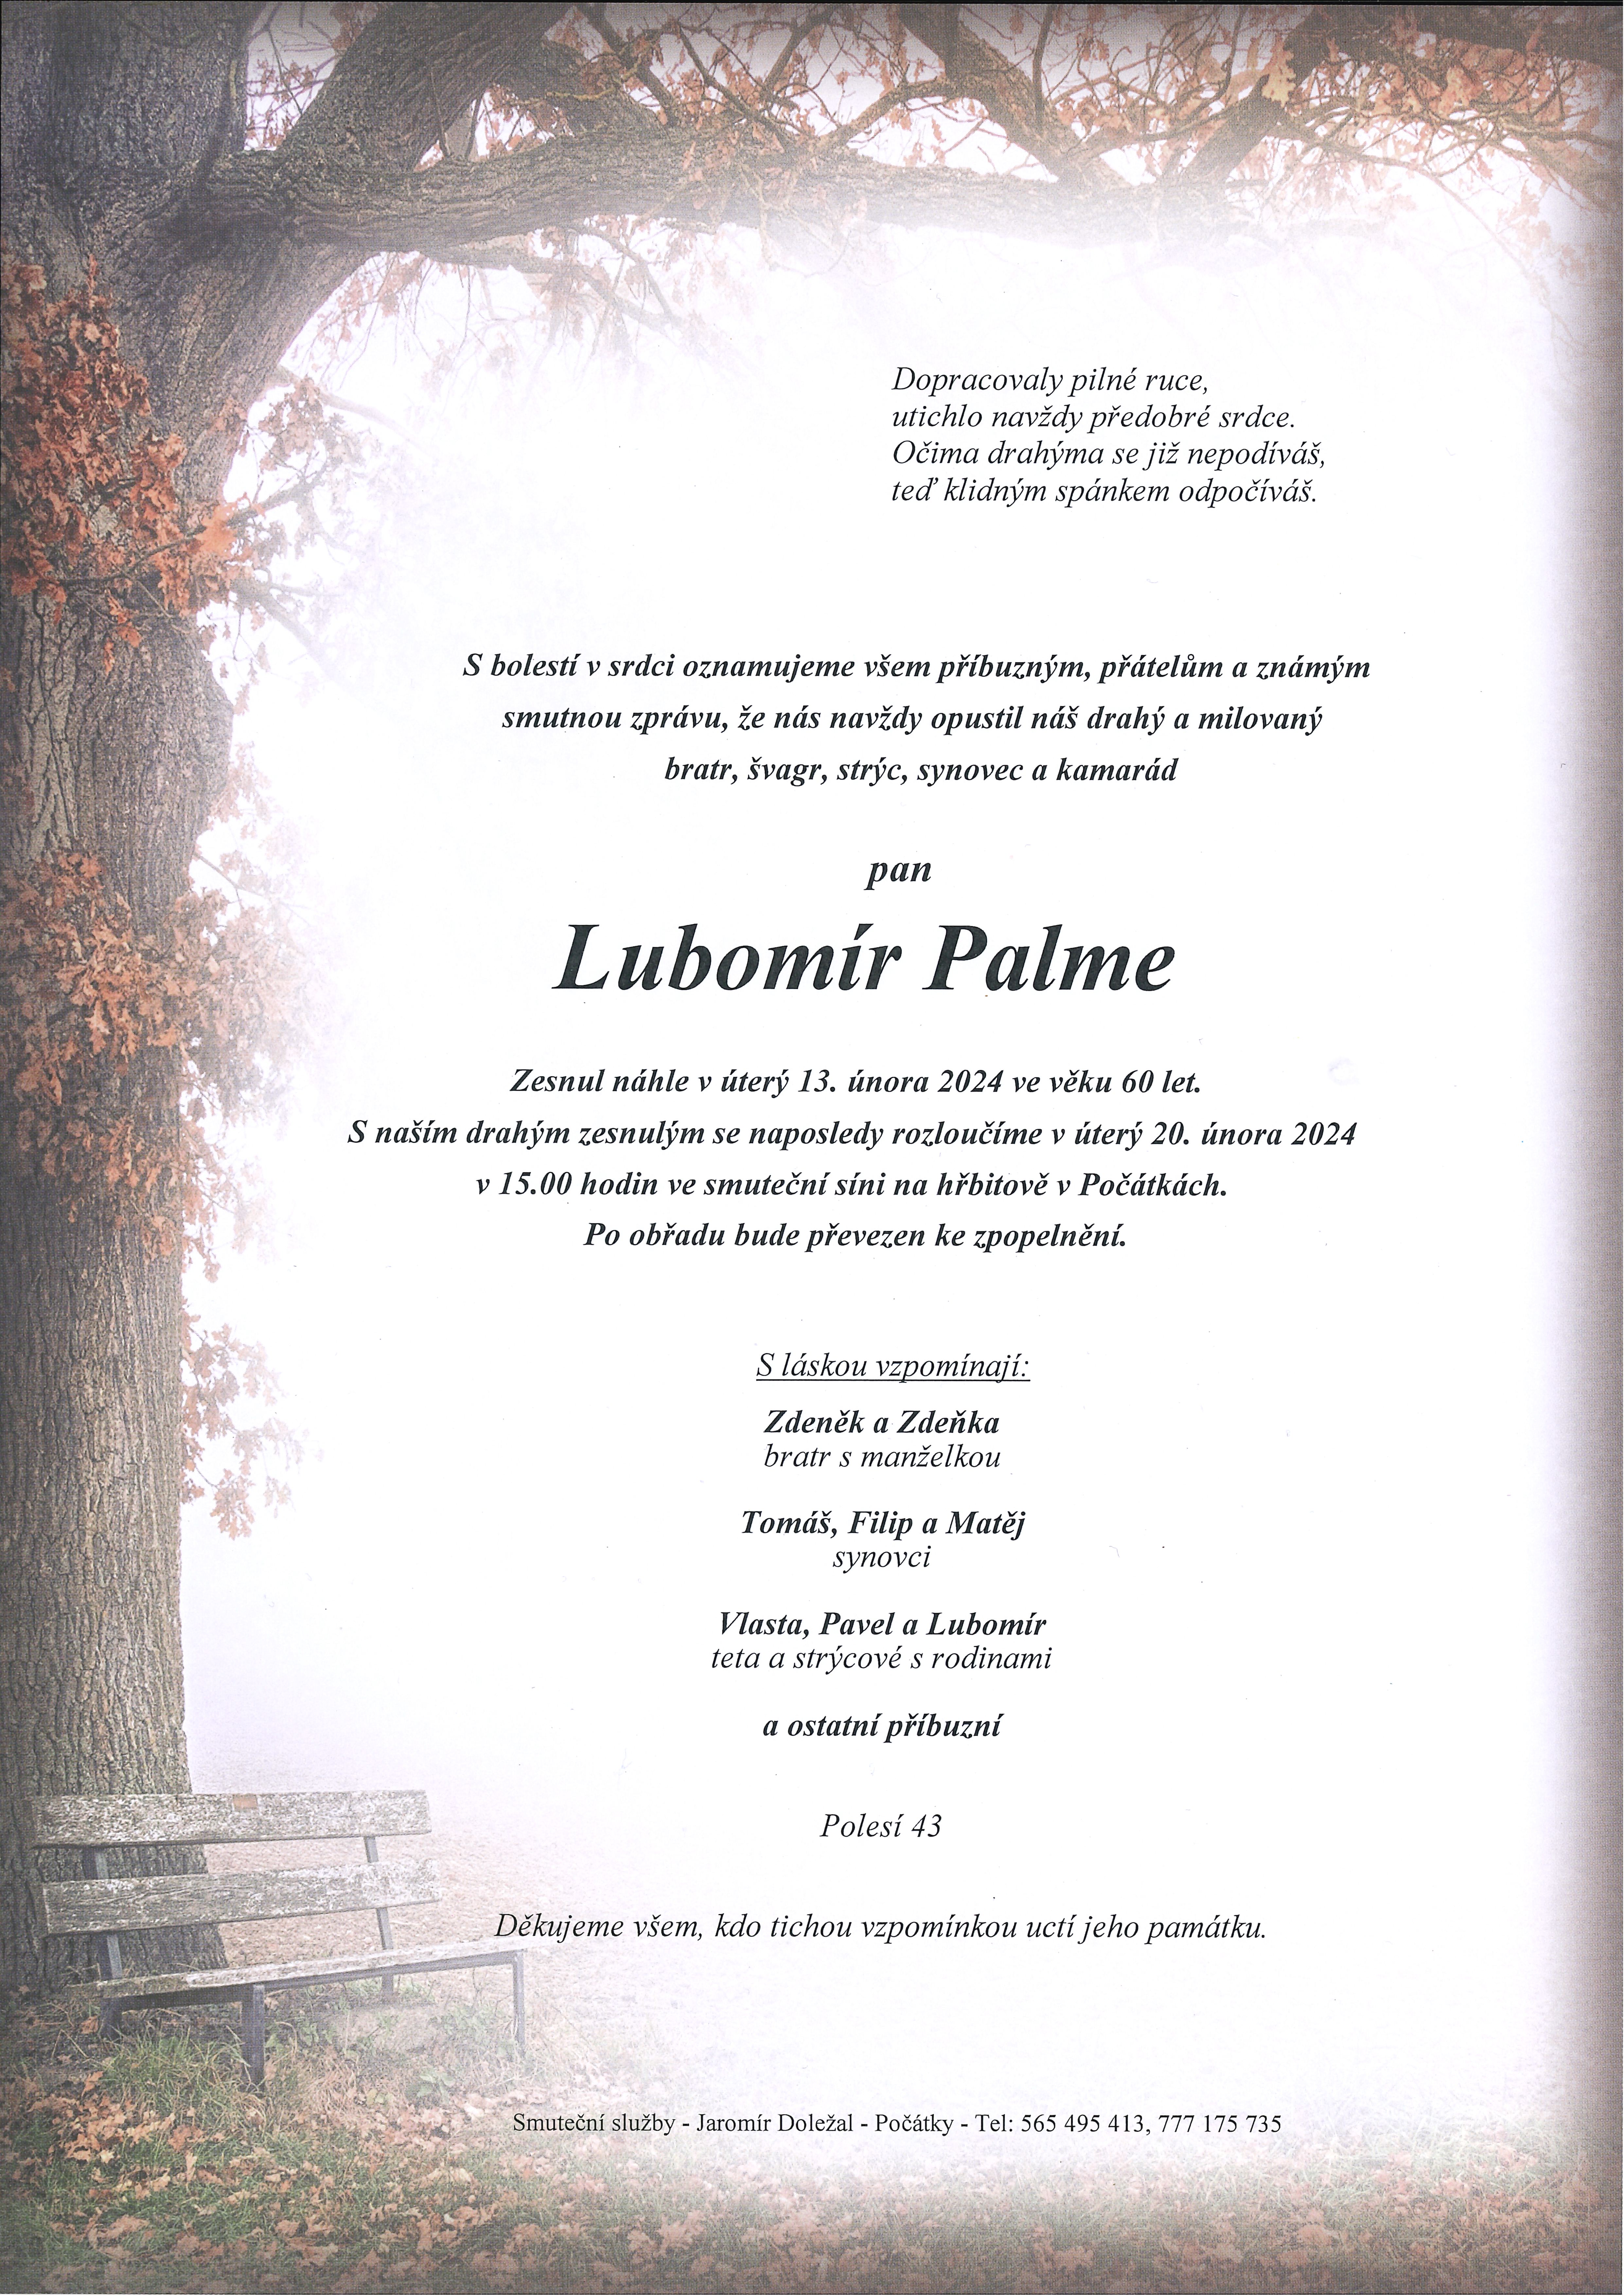 Lubomír Palme